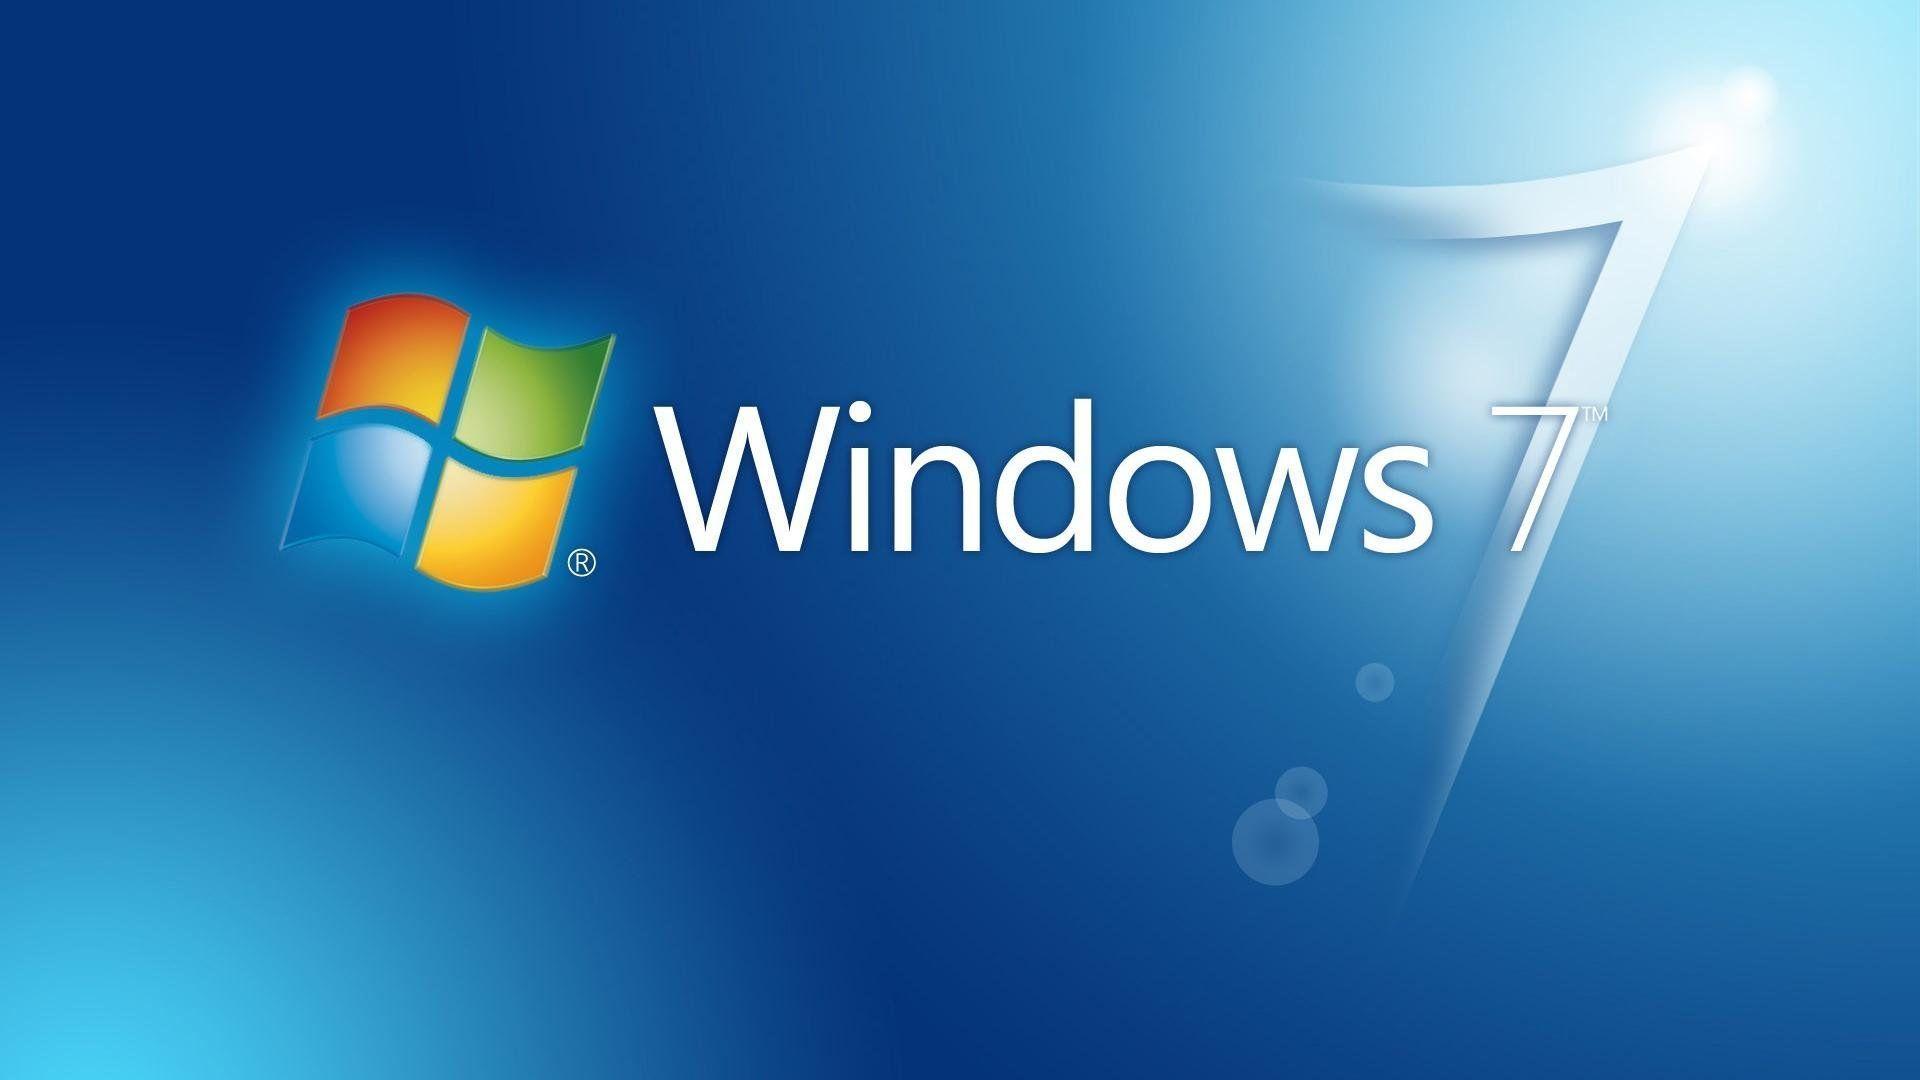 Fondos de pantalla HD gratis para Windows 7